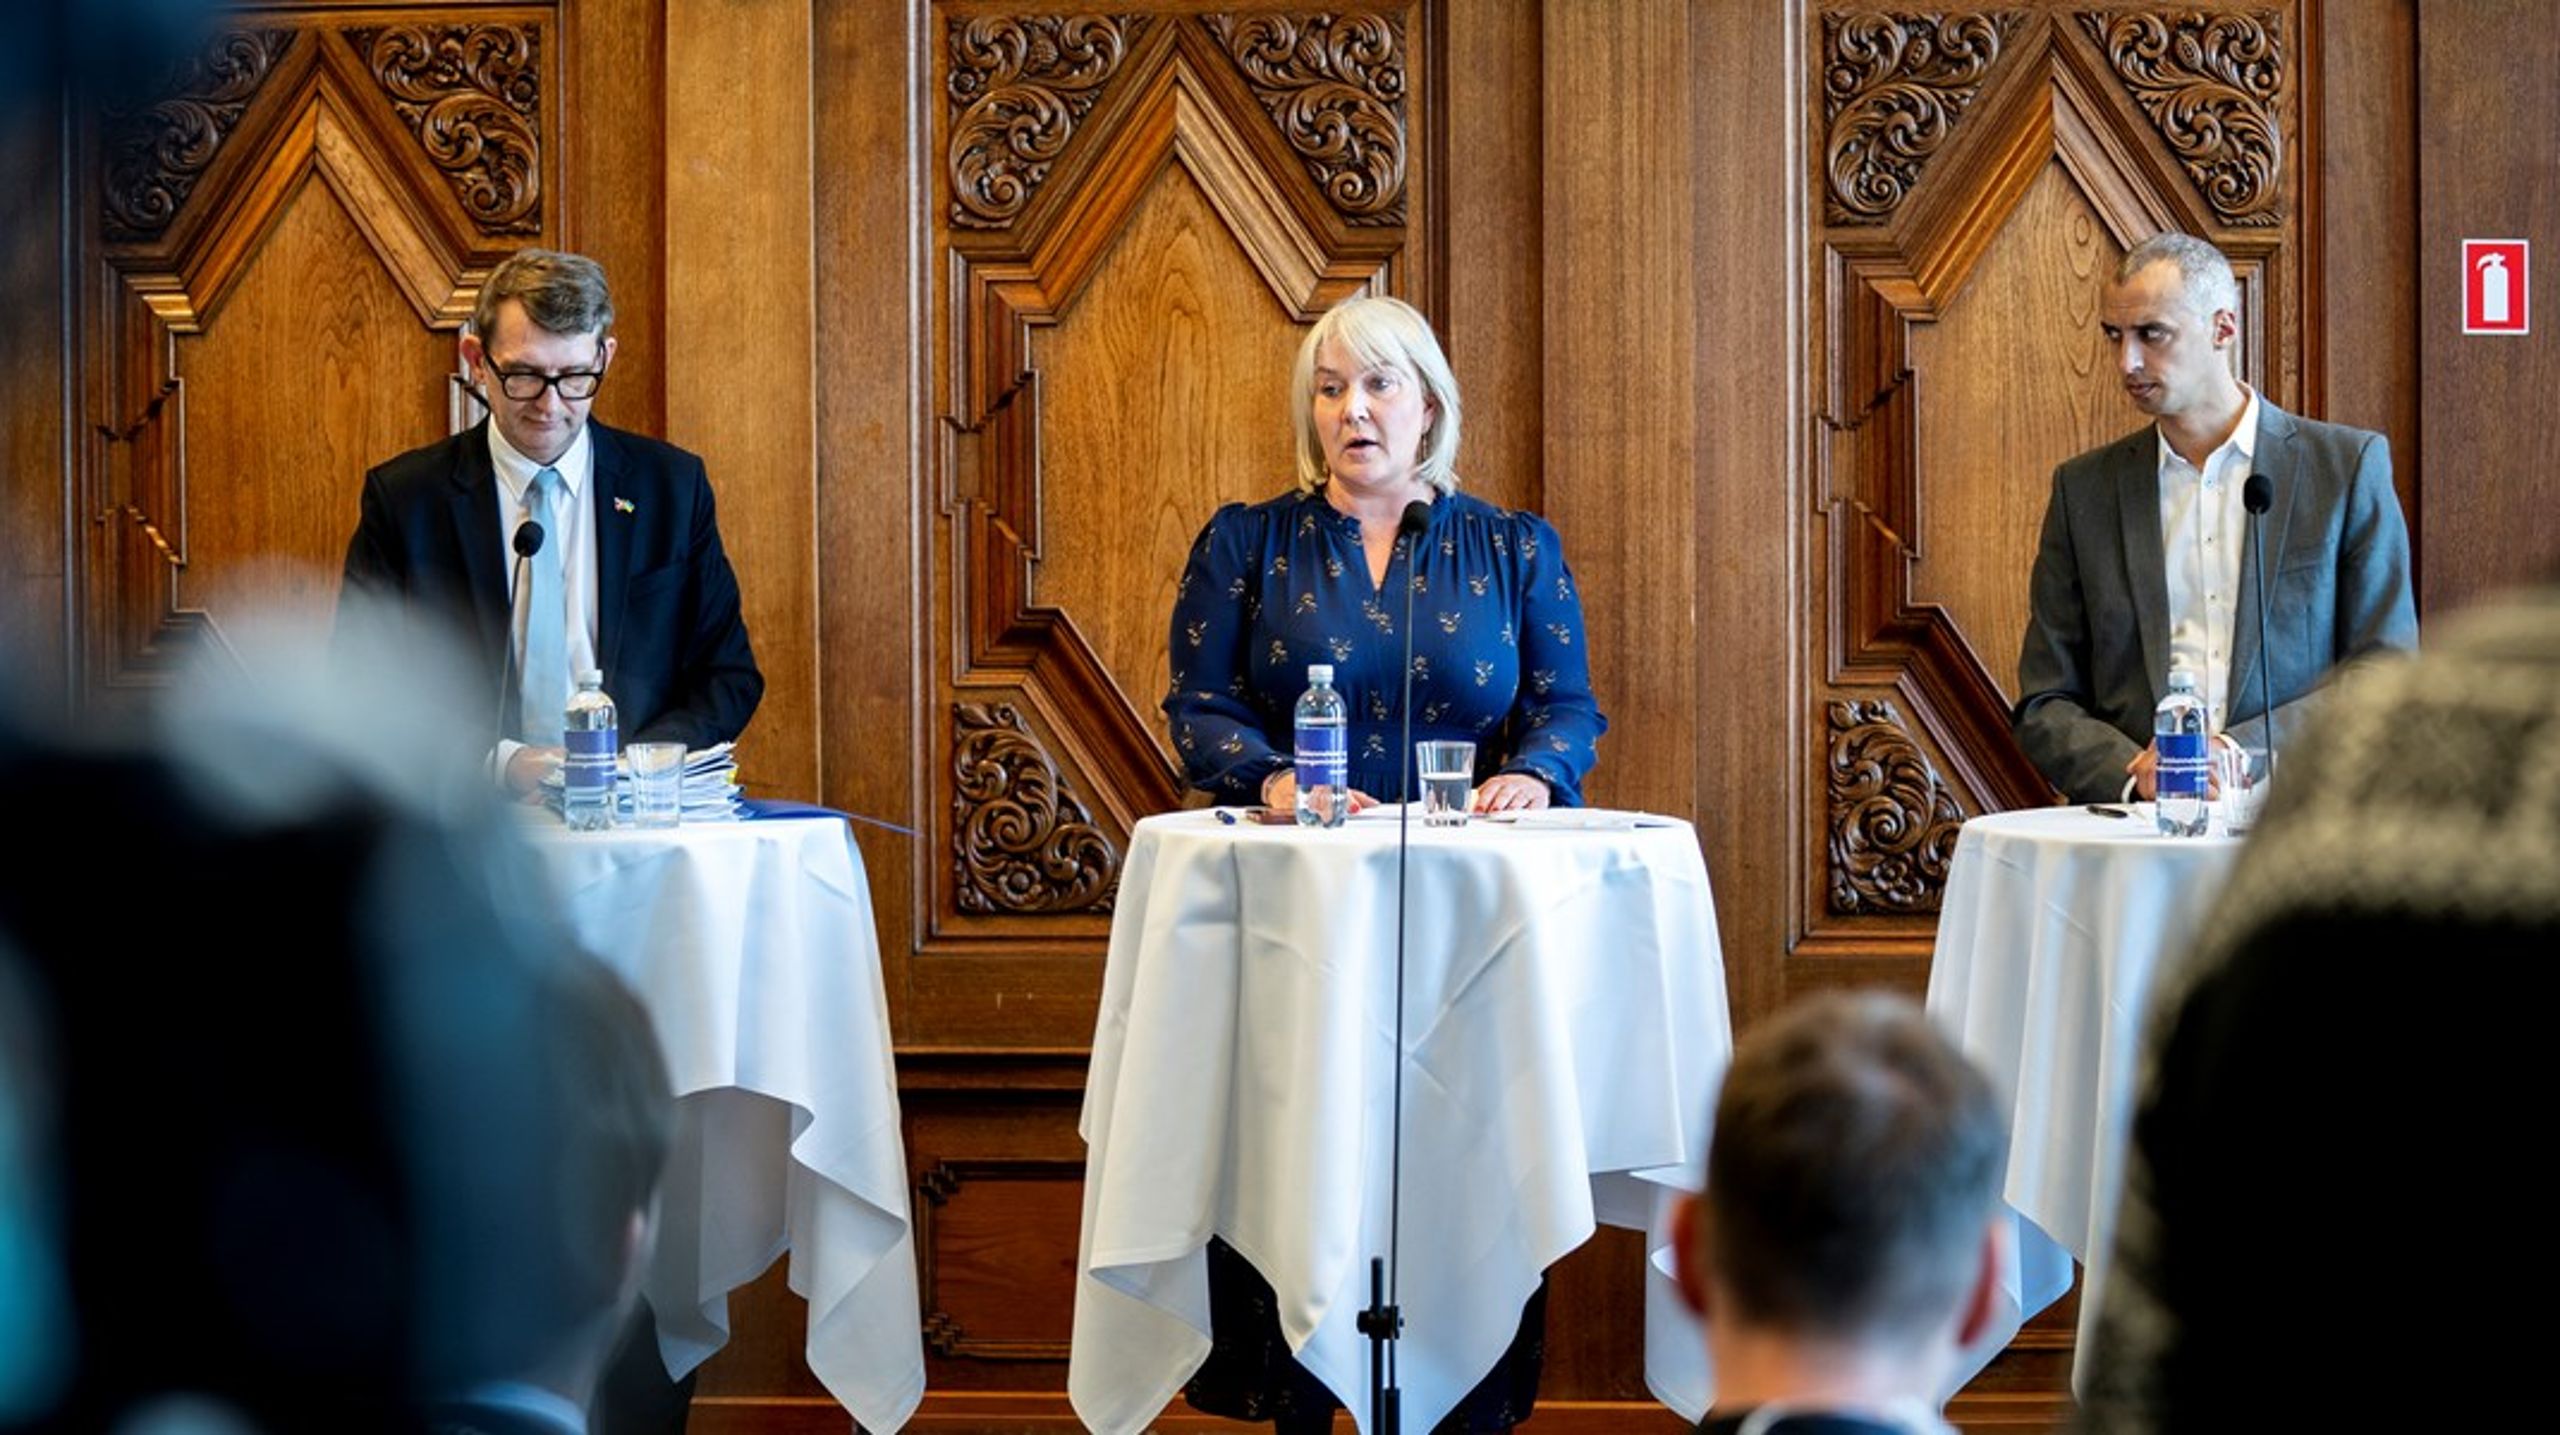 Regeringen med uddannelses- og forskningsminister Christina Egelund (M) i spidsen præsenterede i marts et udspil til en ny kandidatreform. Men de har ikke overvejet konsekvenserne i tilstrækkelig grad, skriver 67 forskere.